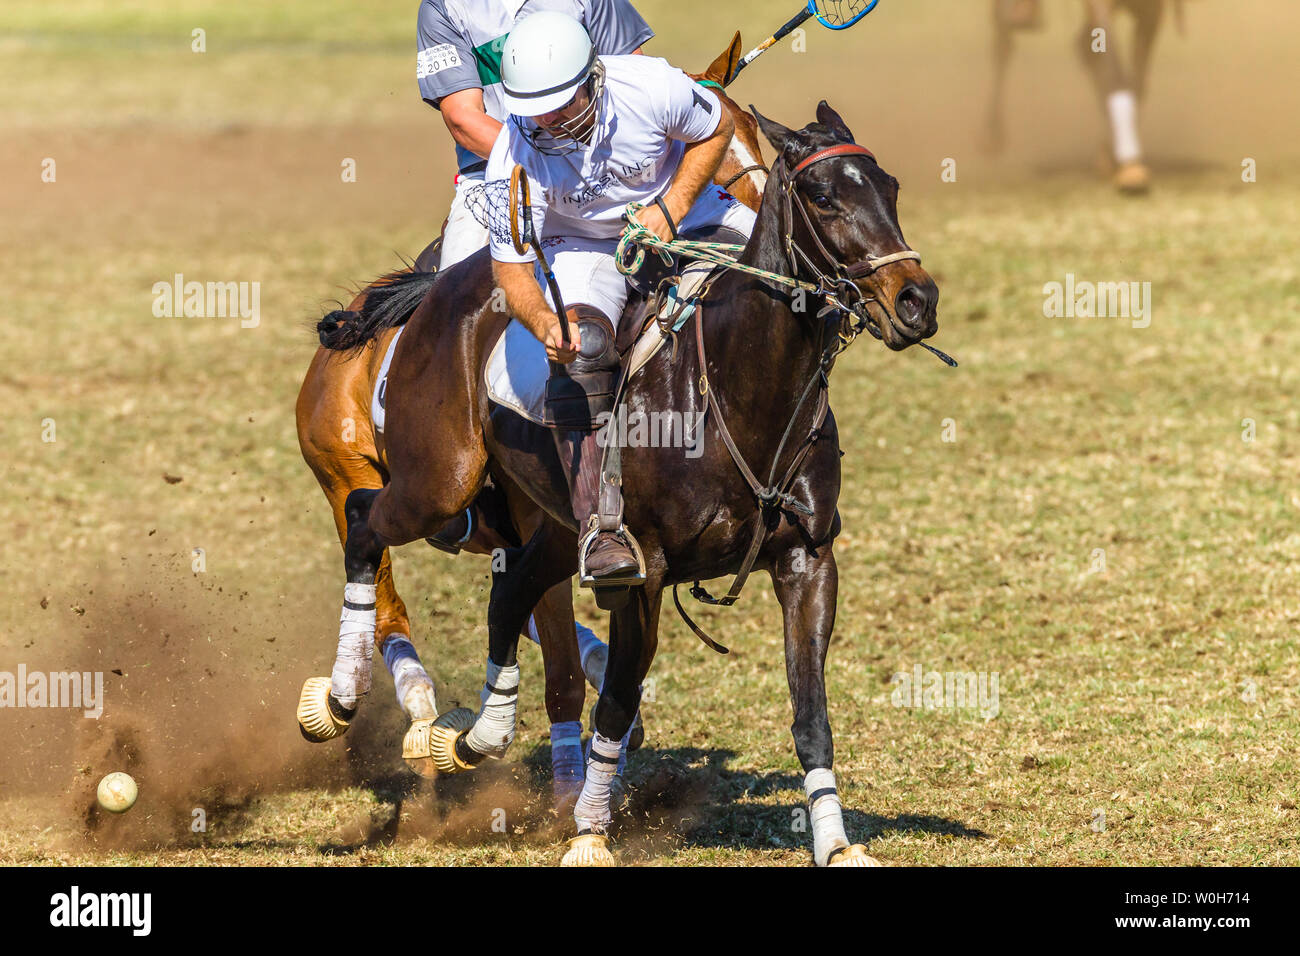 Polocrosse deporte ecuestre caballos pony rider jugadores closeup rápido juego de acción. Foto de stock